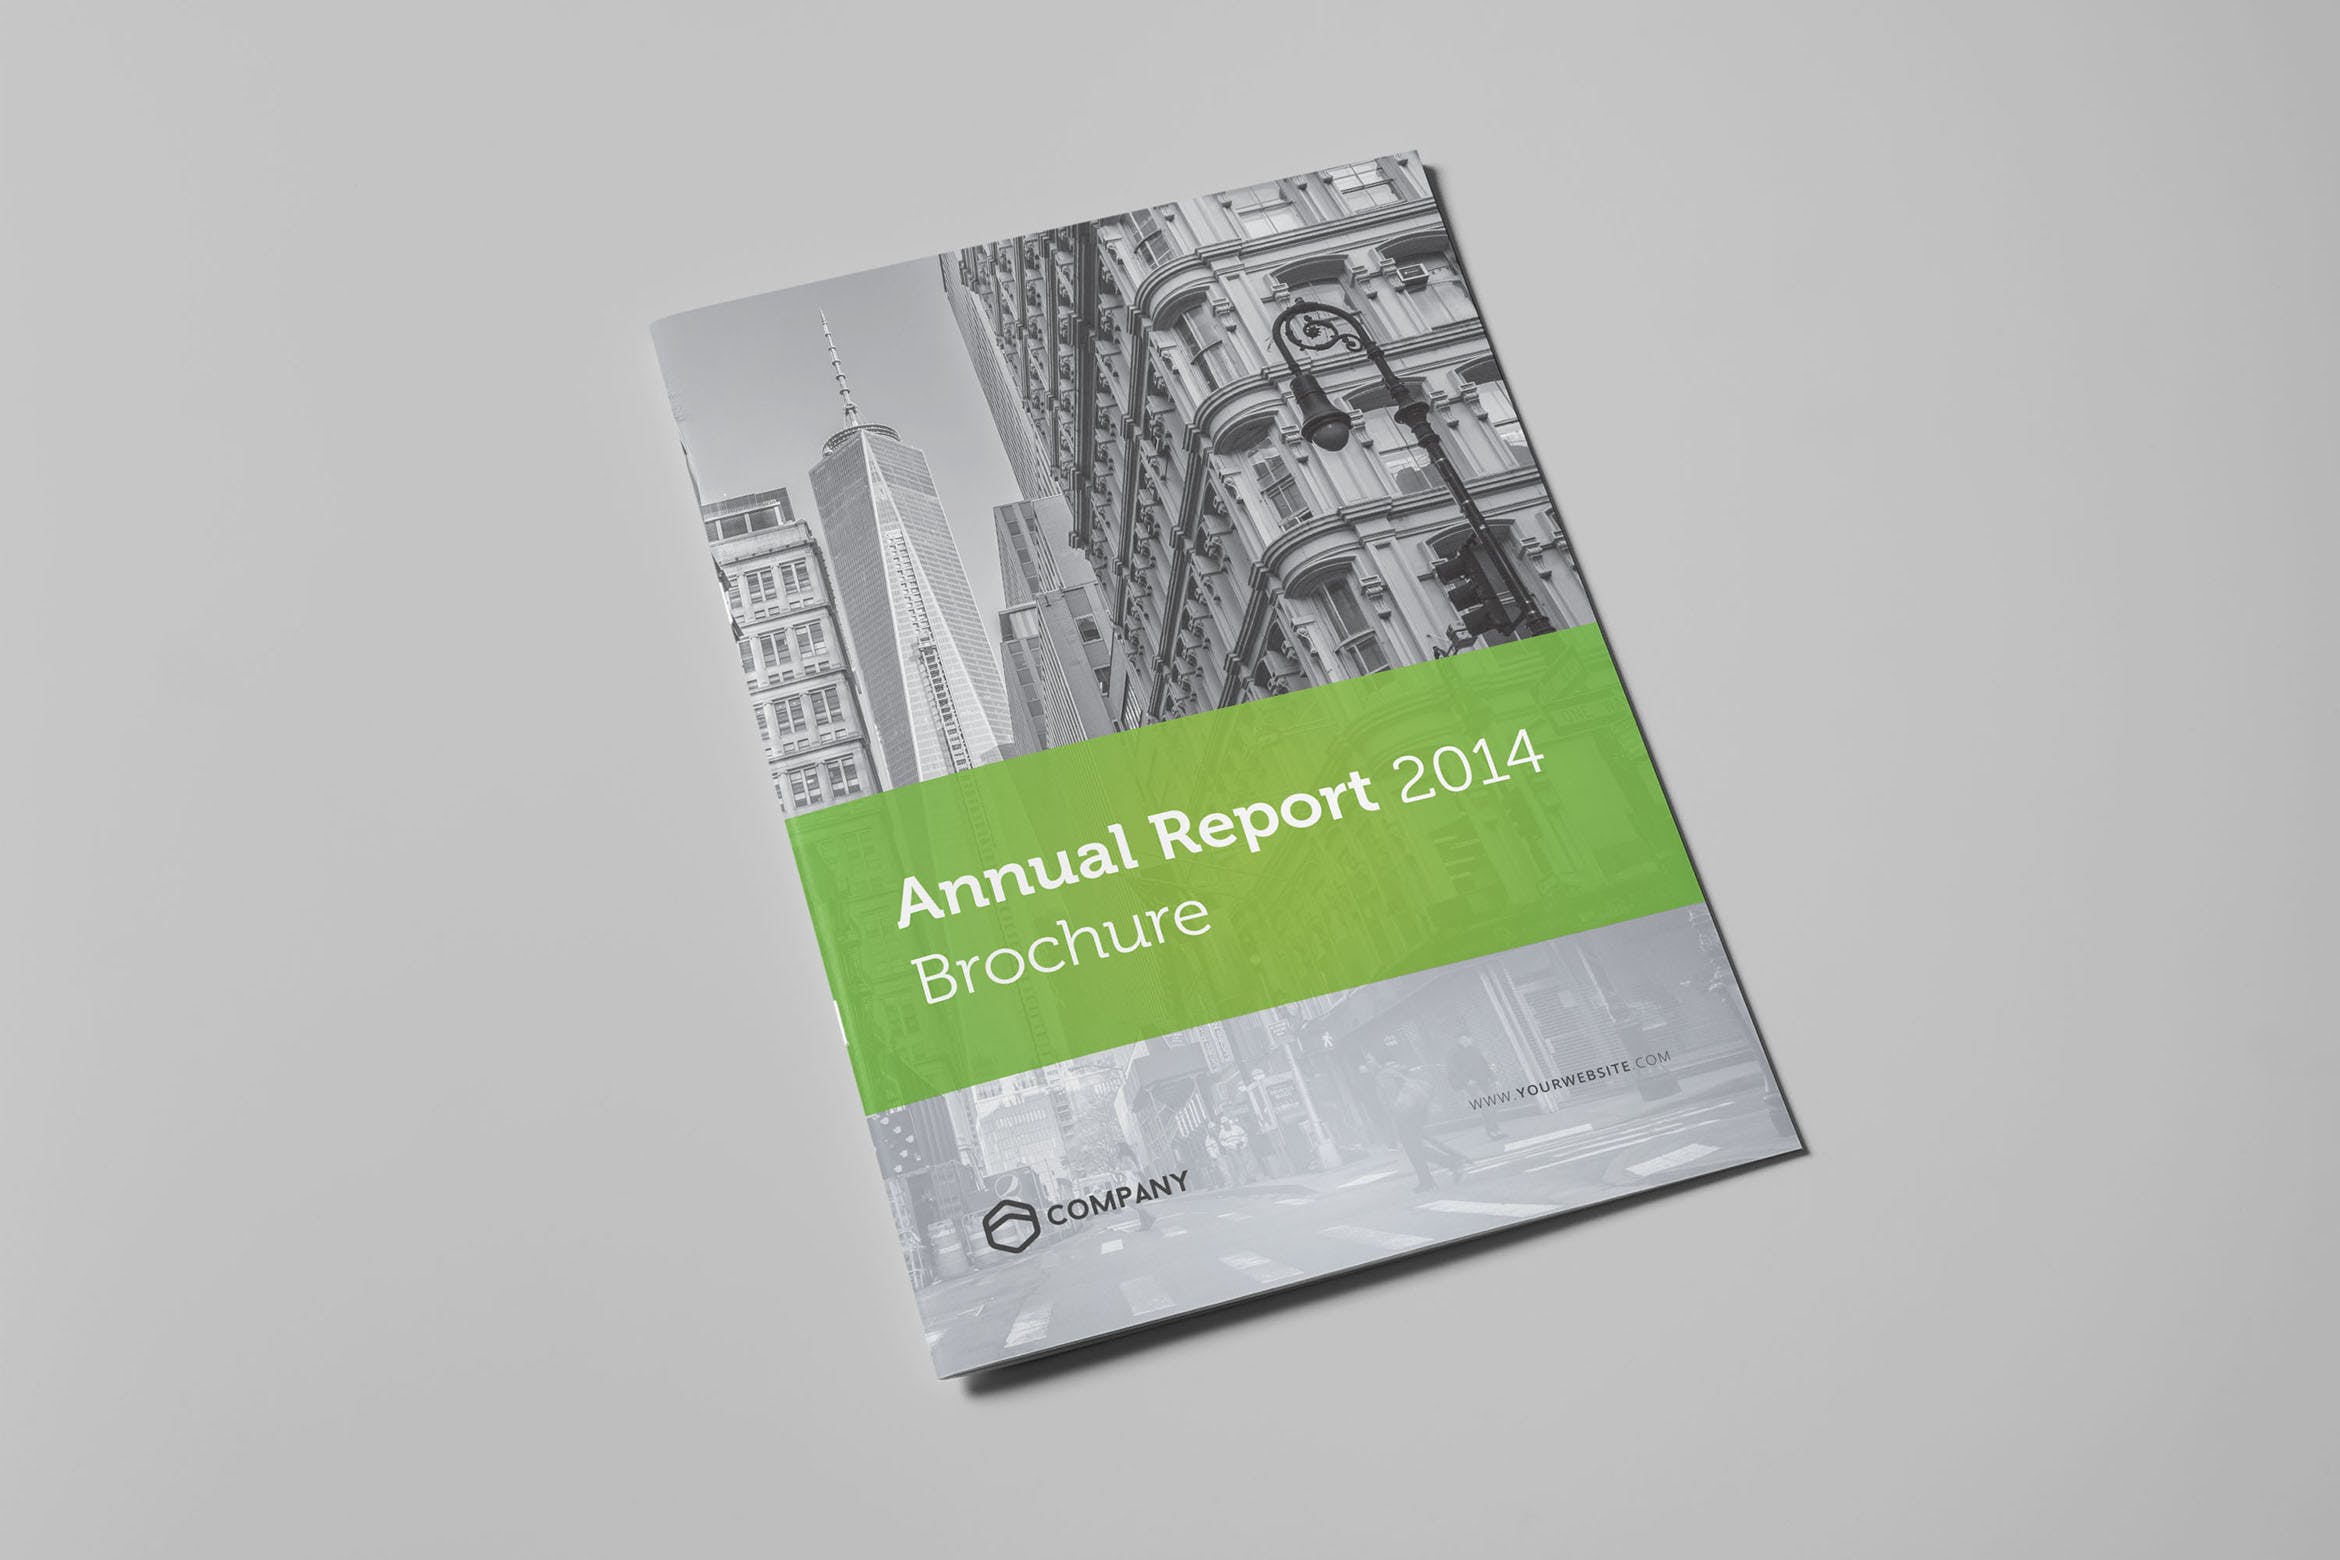 公司企业年度报告设计INDD模板素材 Annual Report 2014 Brochure插图